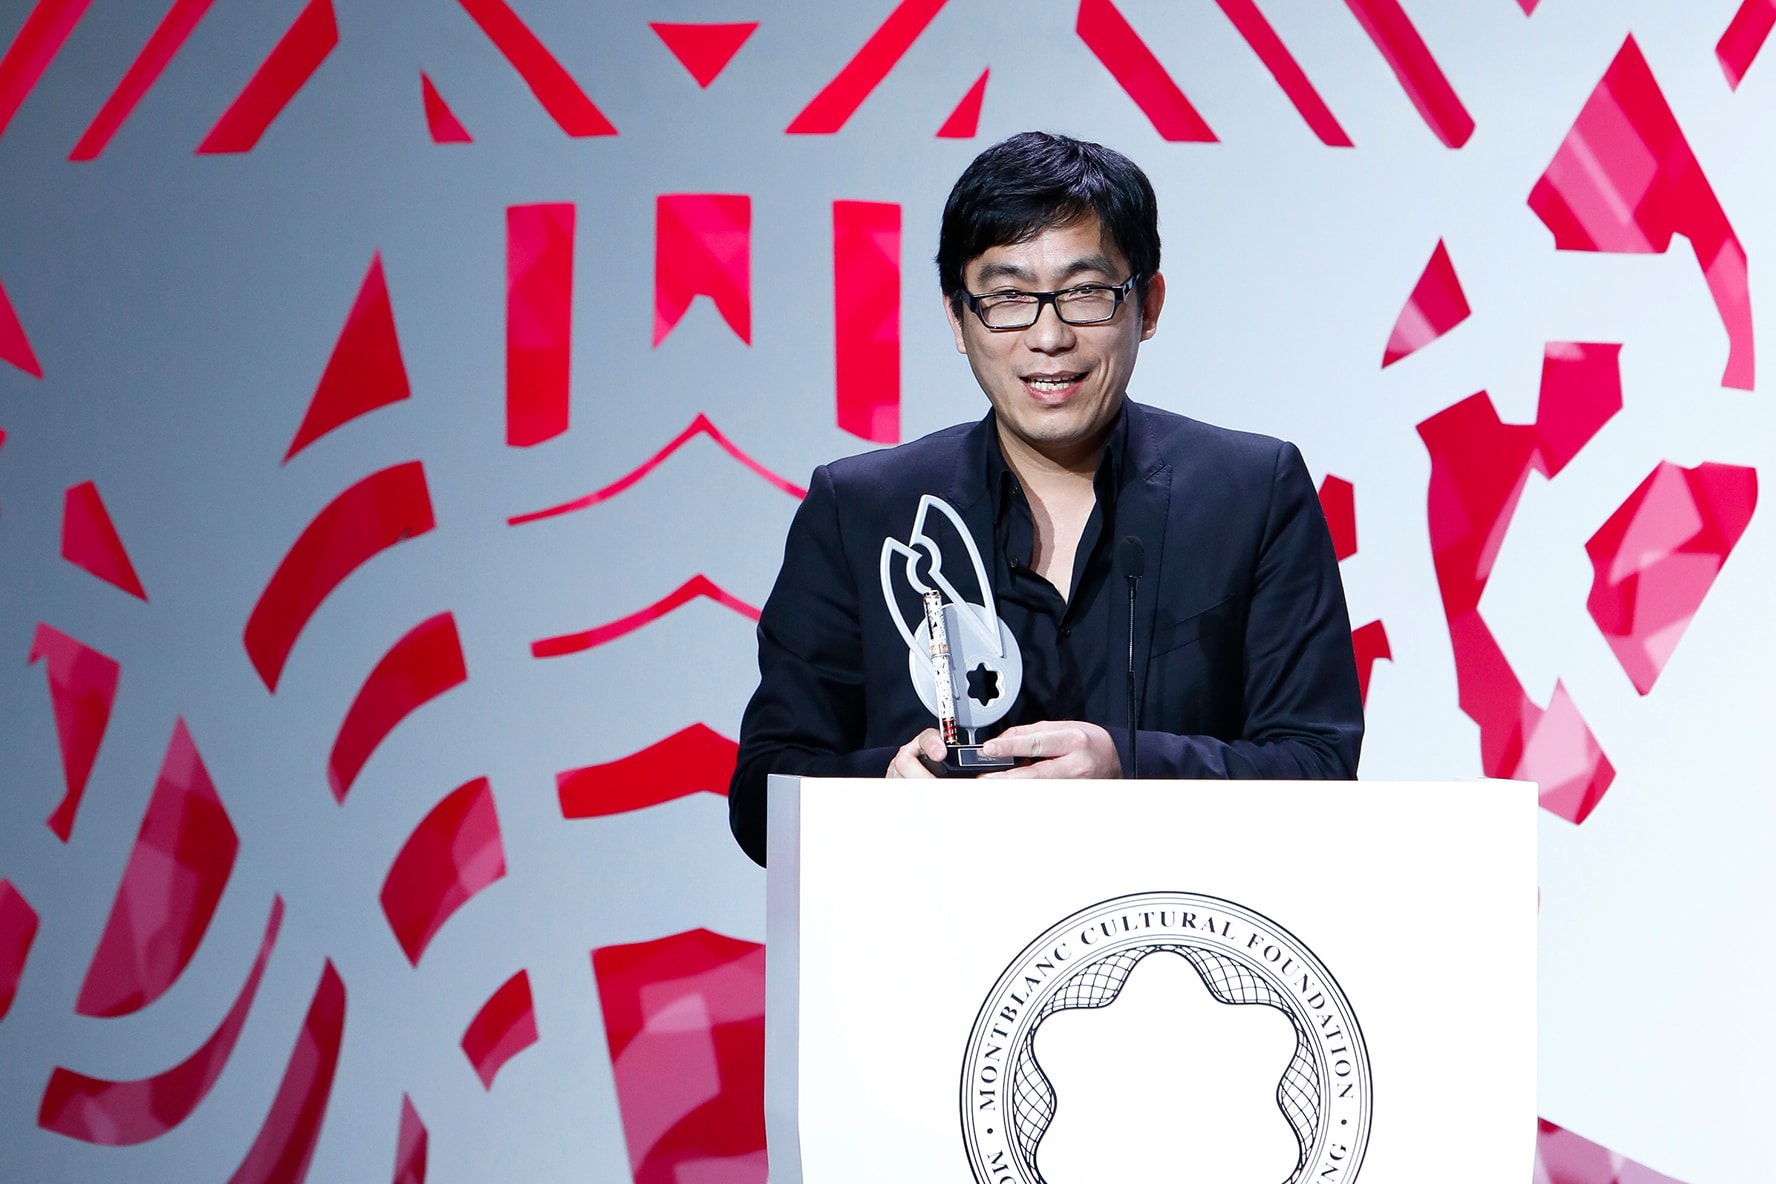 中國現代藝術家徐震得 Montblanc 國際藝術贊助大獎